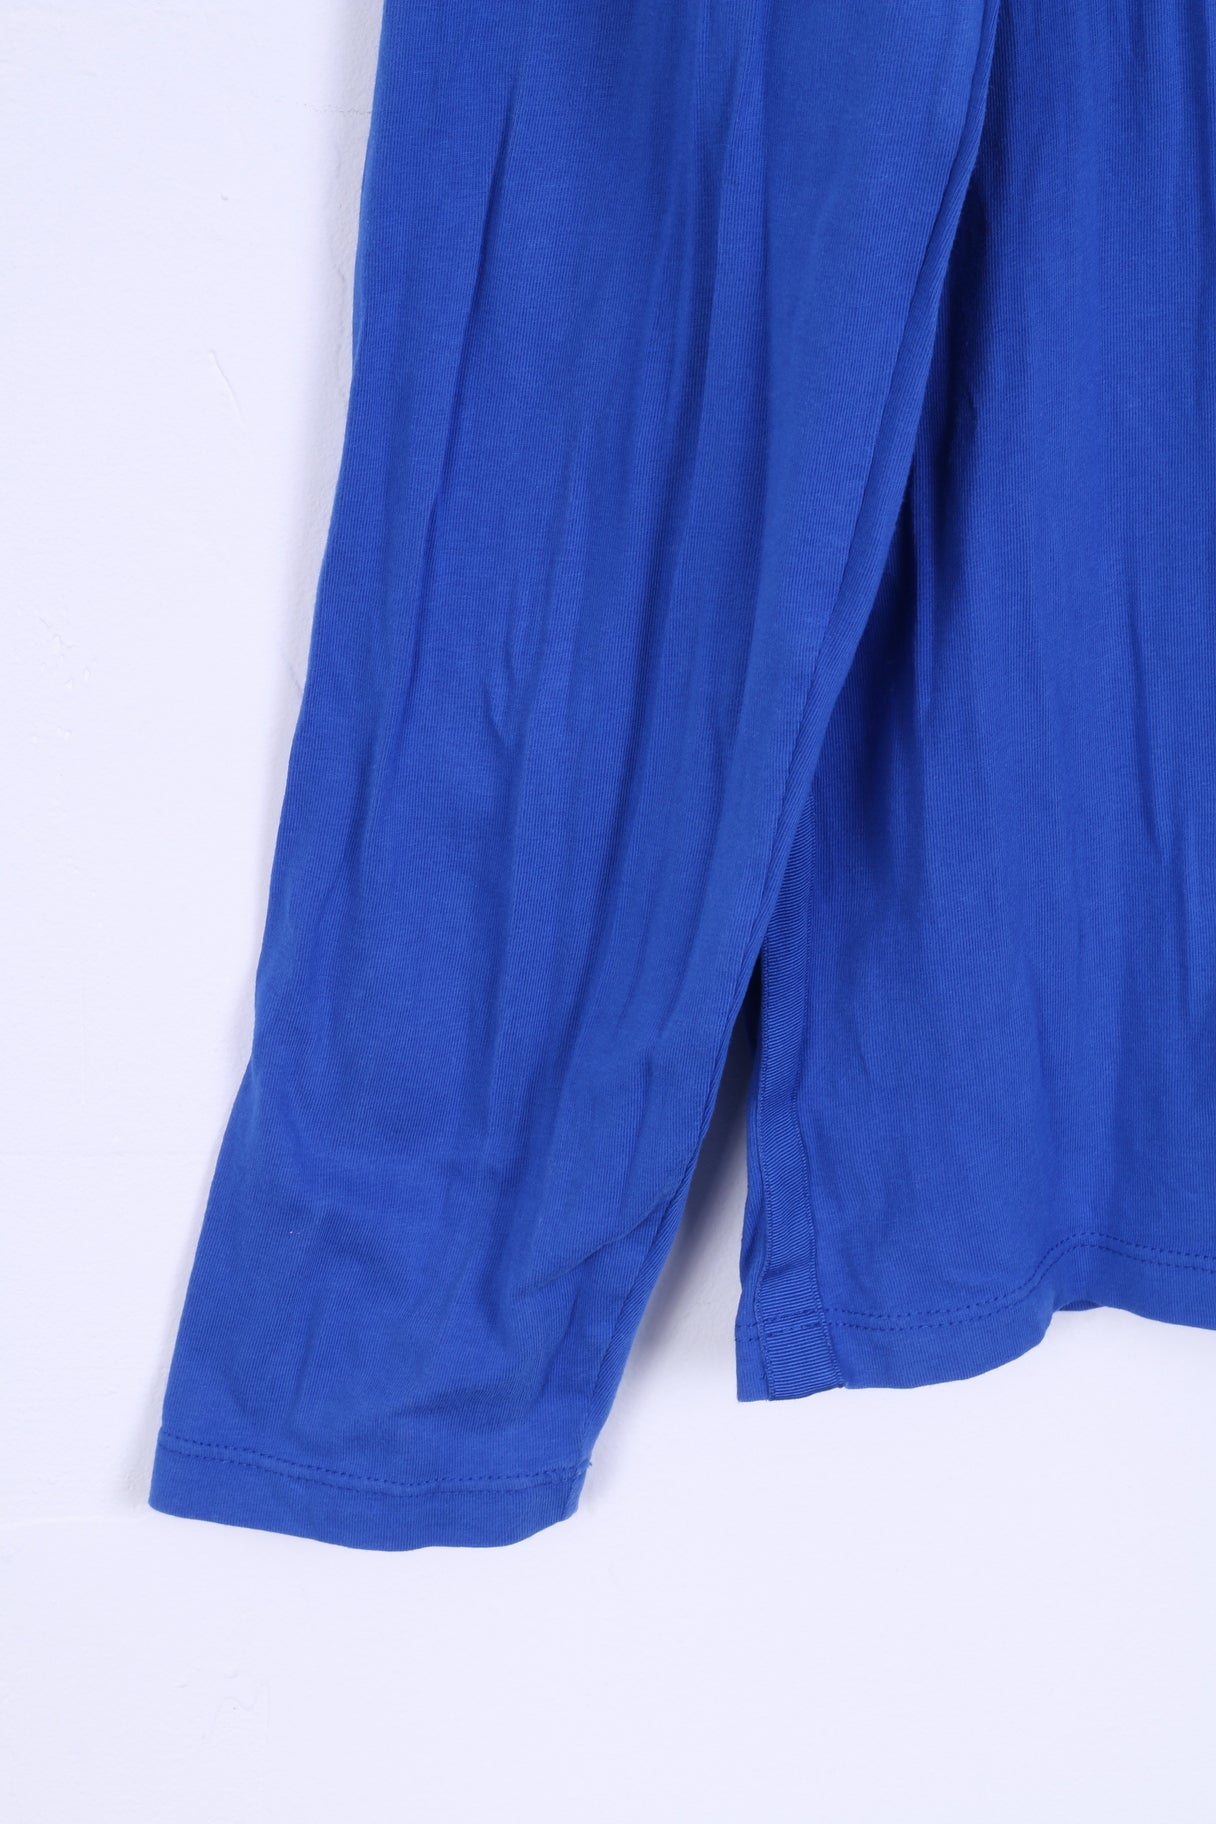 Armani Exchange Chemise S pour homme bleue à manches longues en coton extensible et col rond